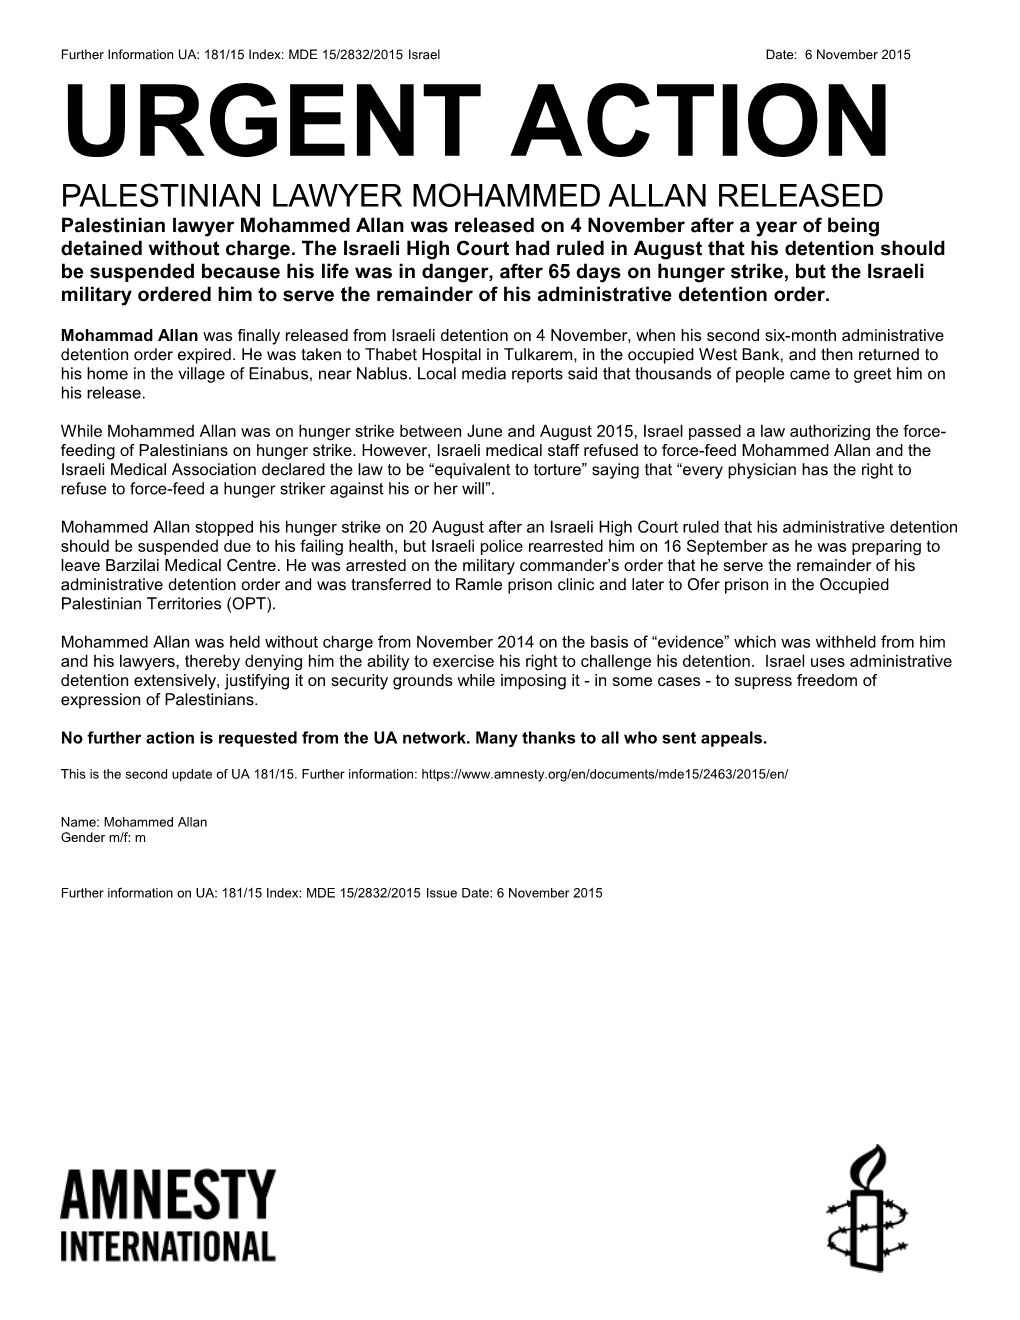 Palestinian Lawyer Mohammed Allan Released